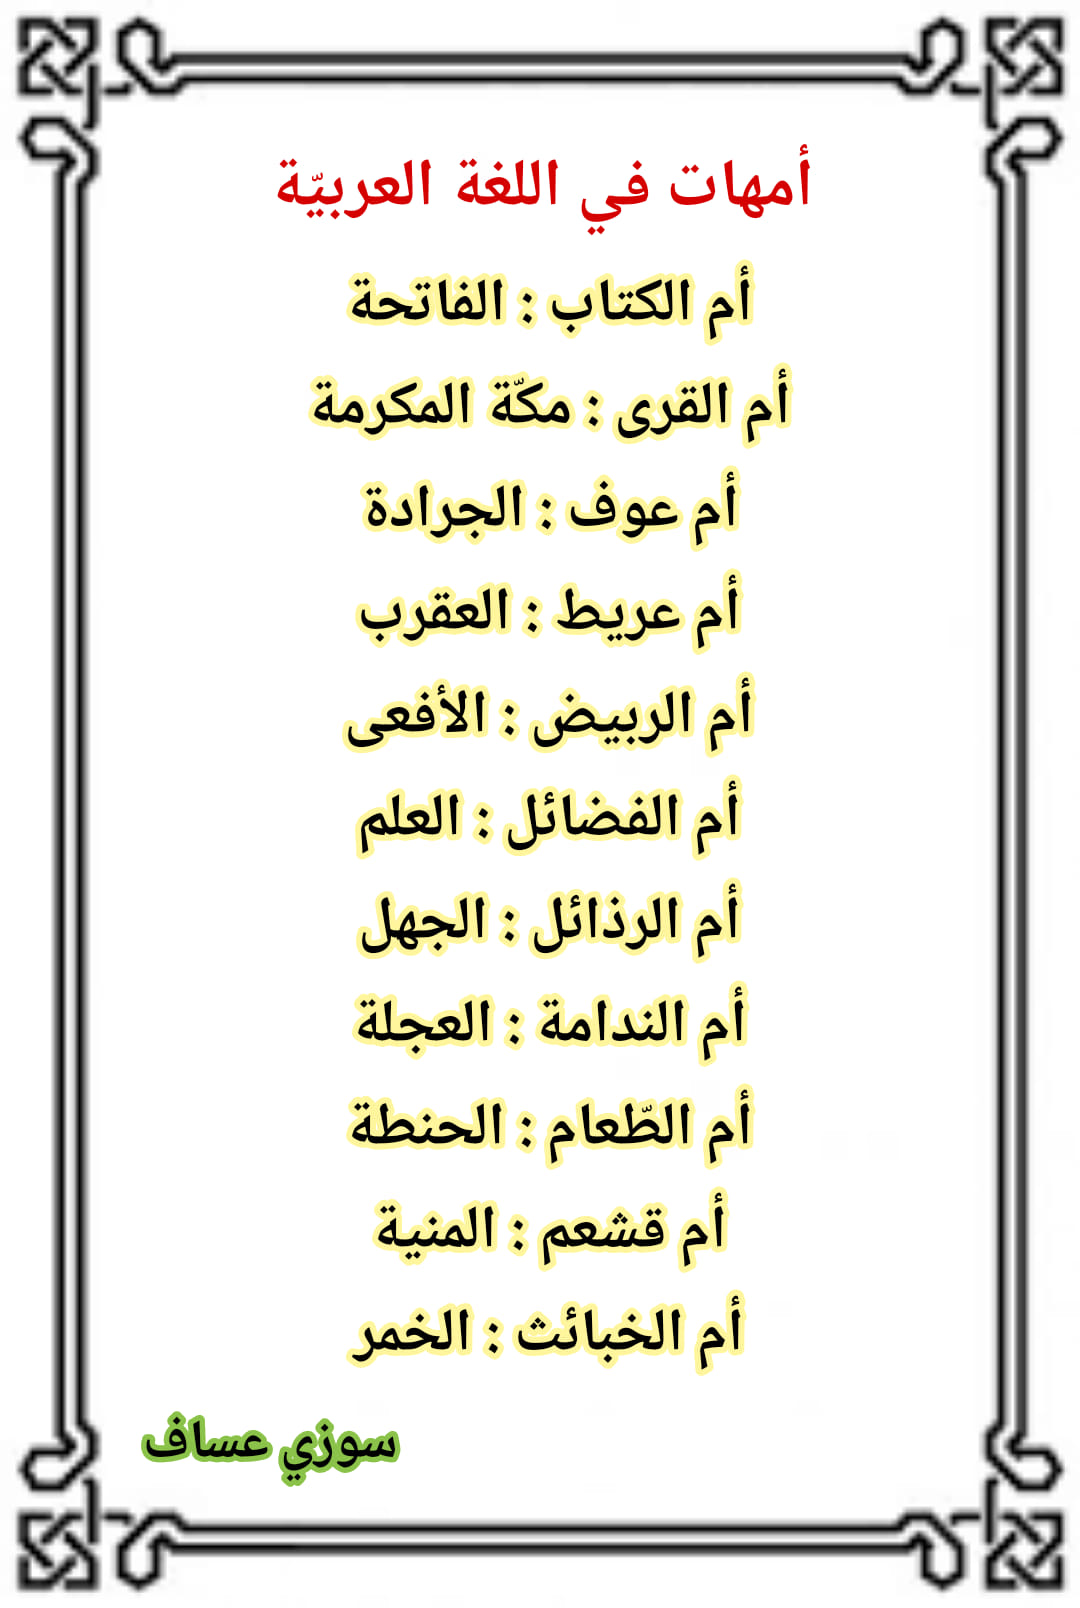 NTAwNjQ3MC41NDc2 اسماء اباء و امهات و ابناء ومعانيها في اللغة العربية معلومات جميلة بالصور